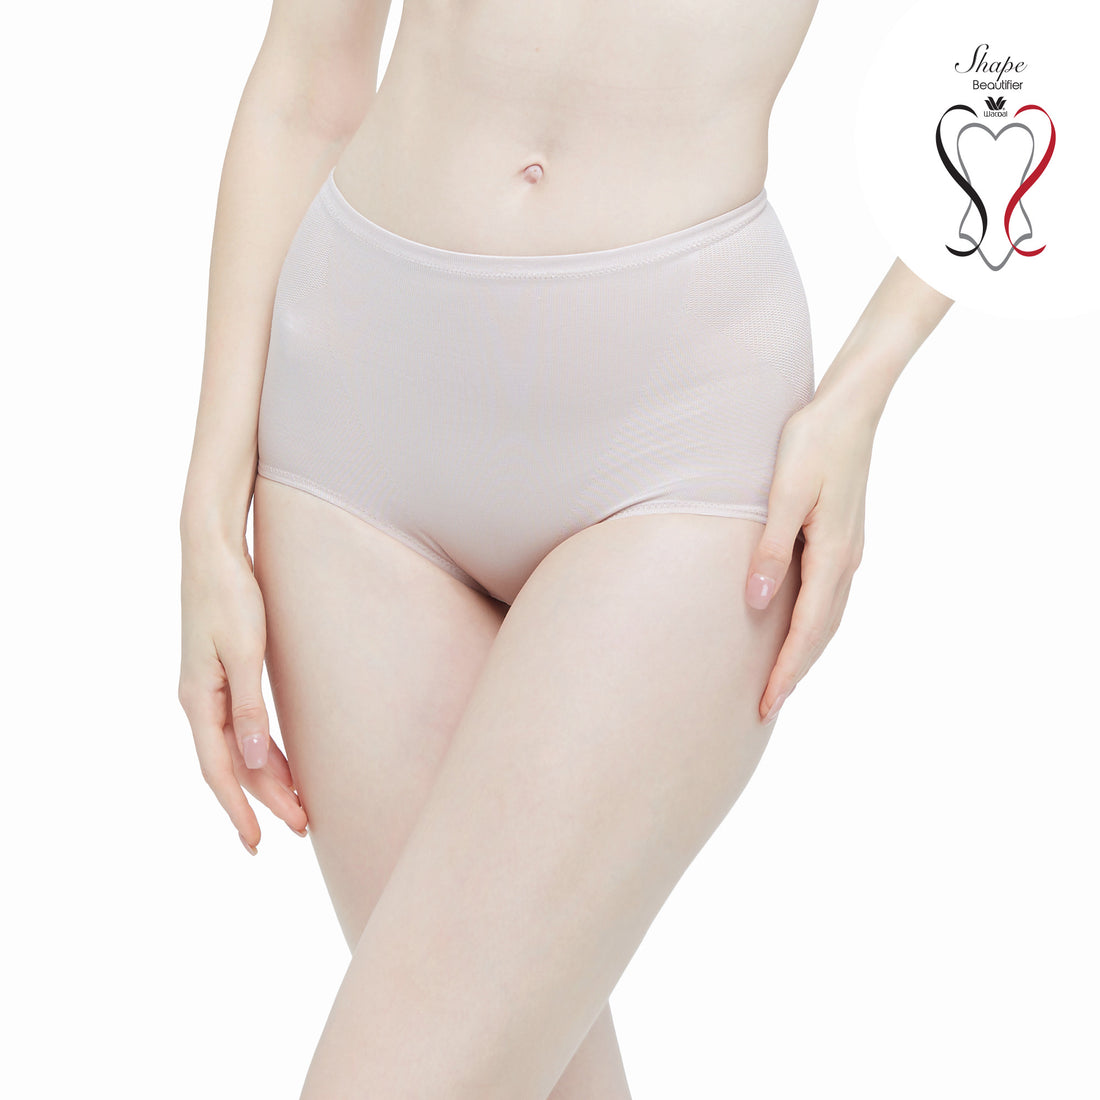 Wacoal Shapewear Hips Tummy Control Panties Model WY1128 Beige (BE